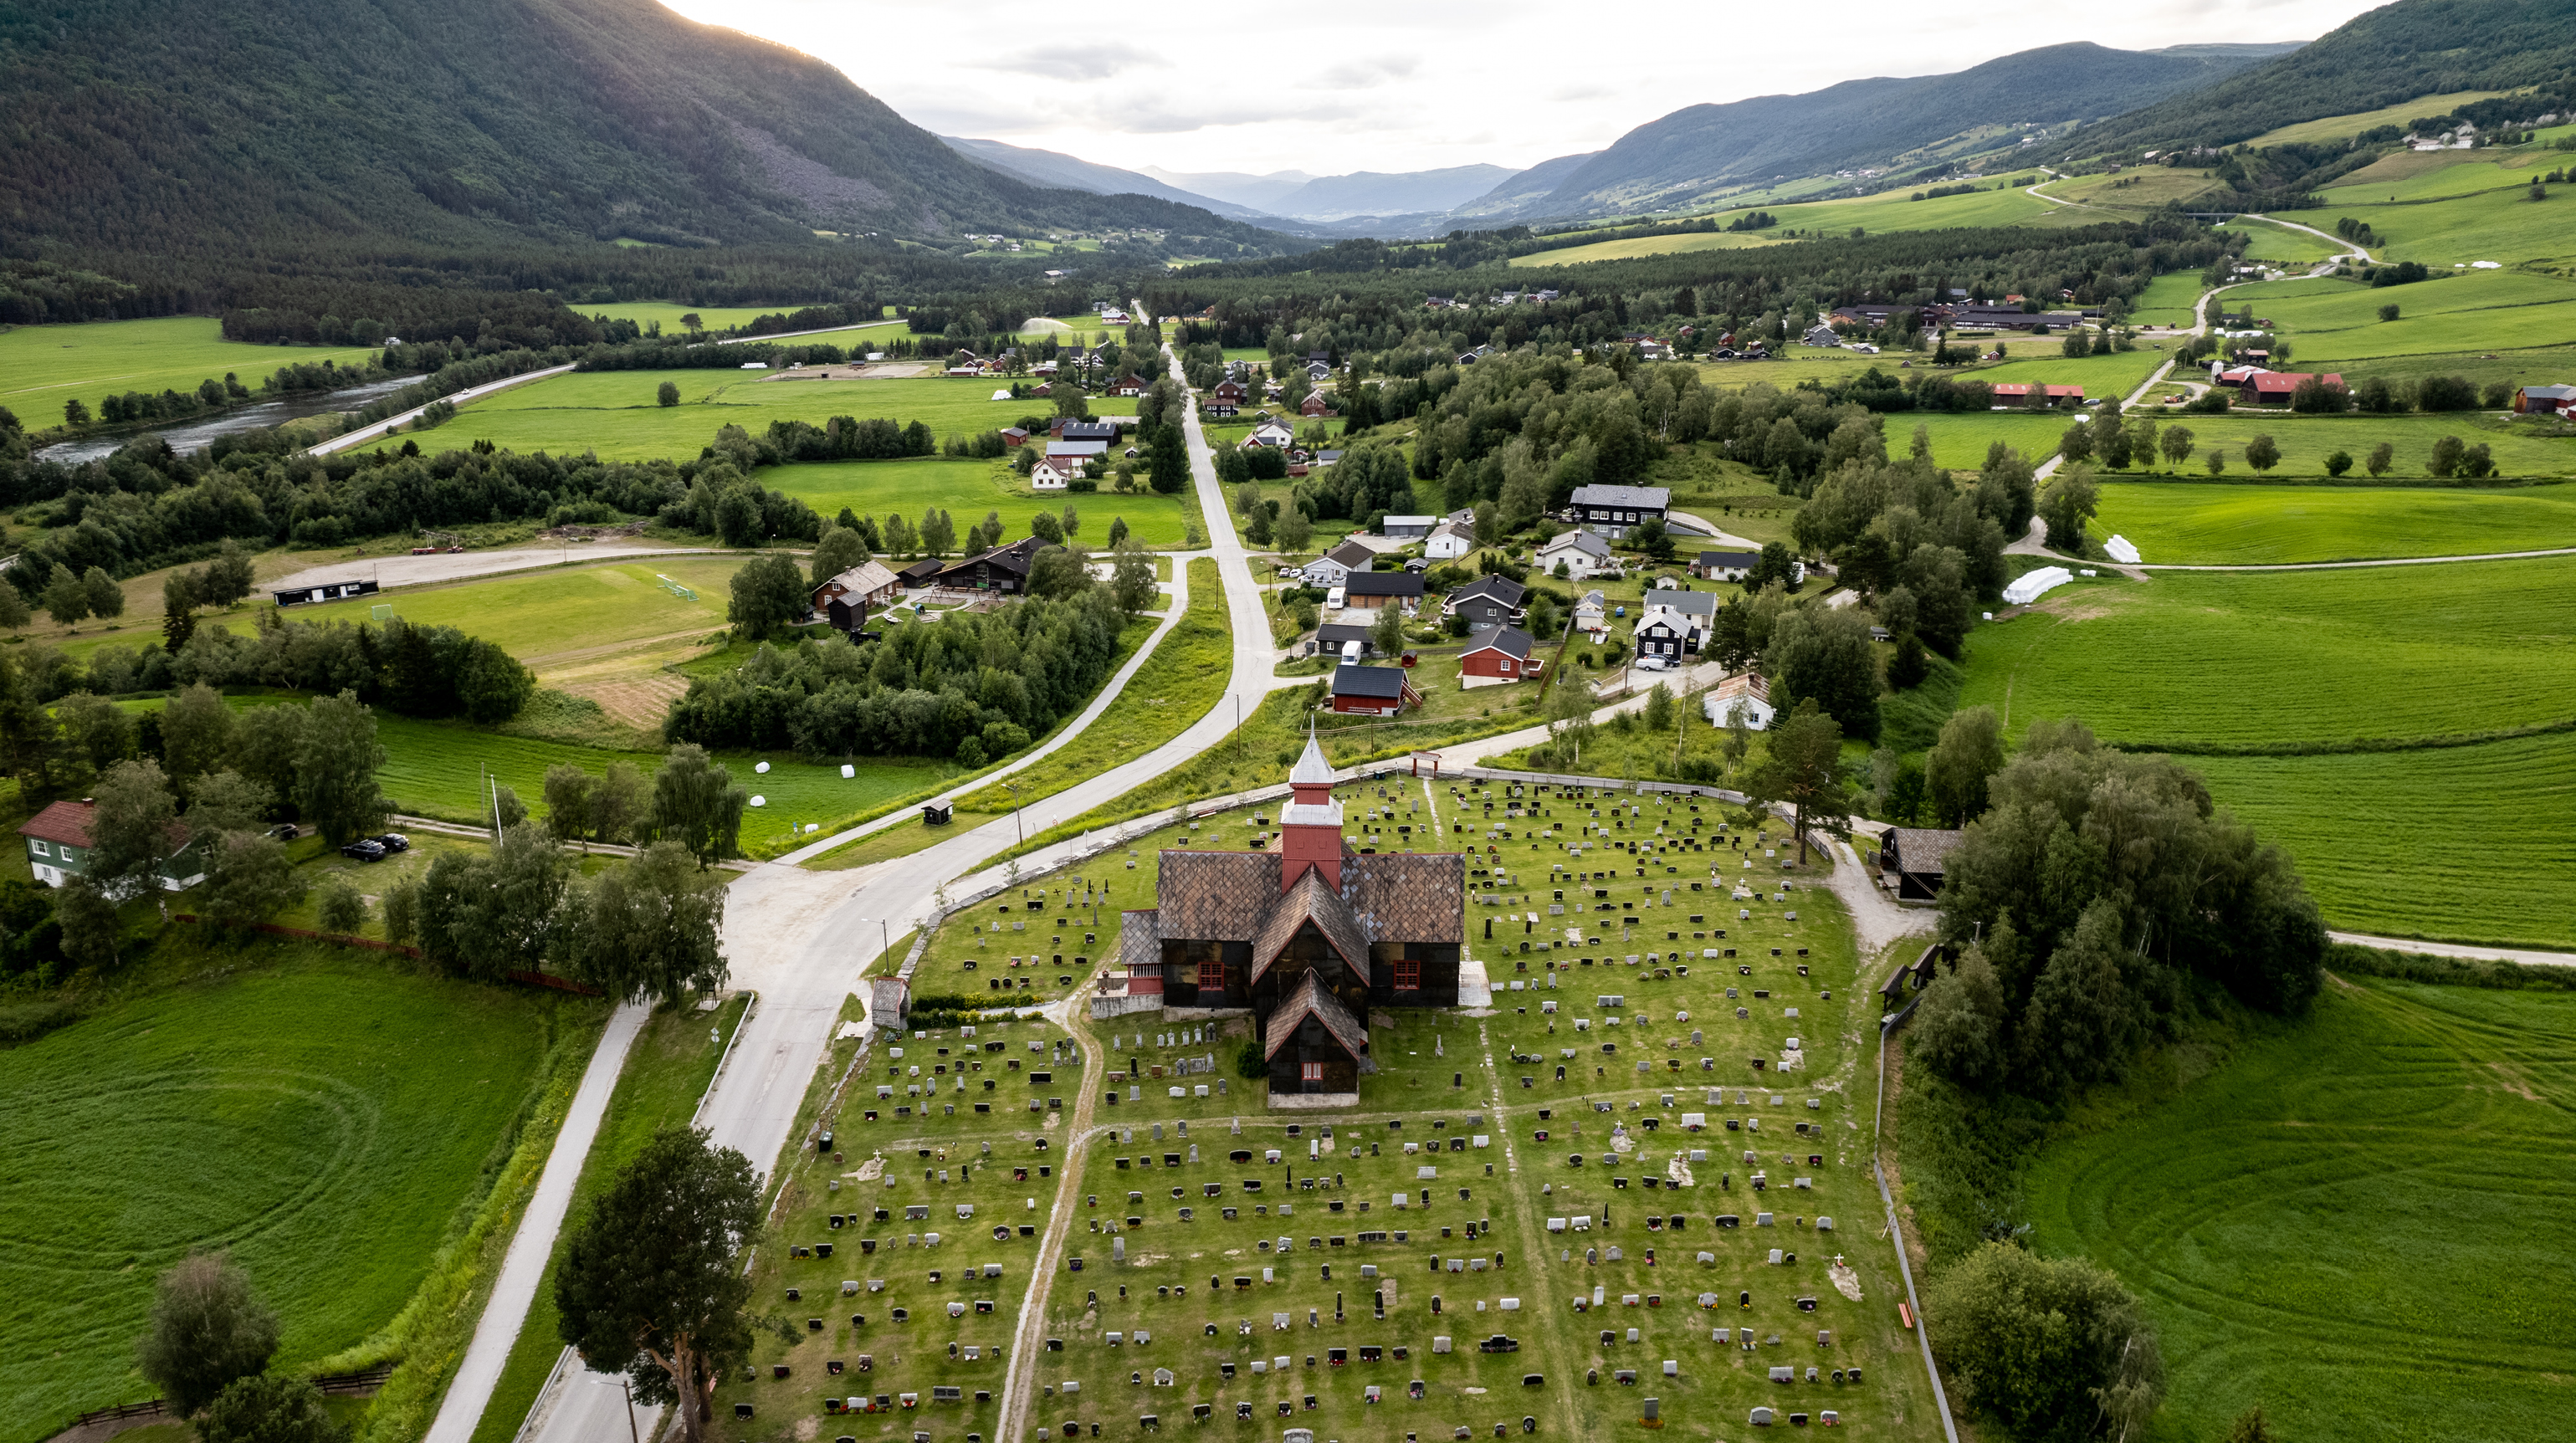 Foto: Joakim Birkeland/Den norske kirke